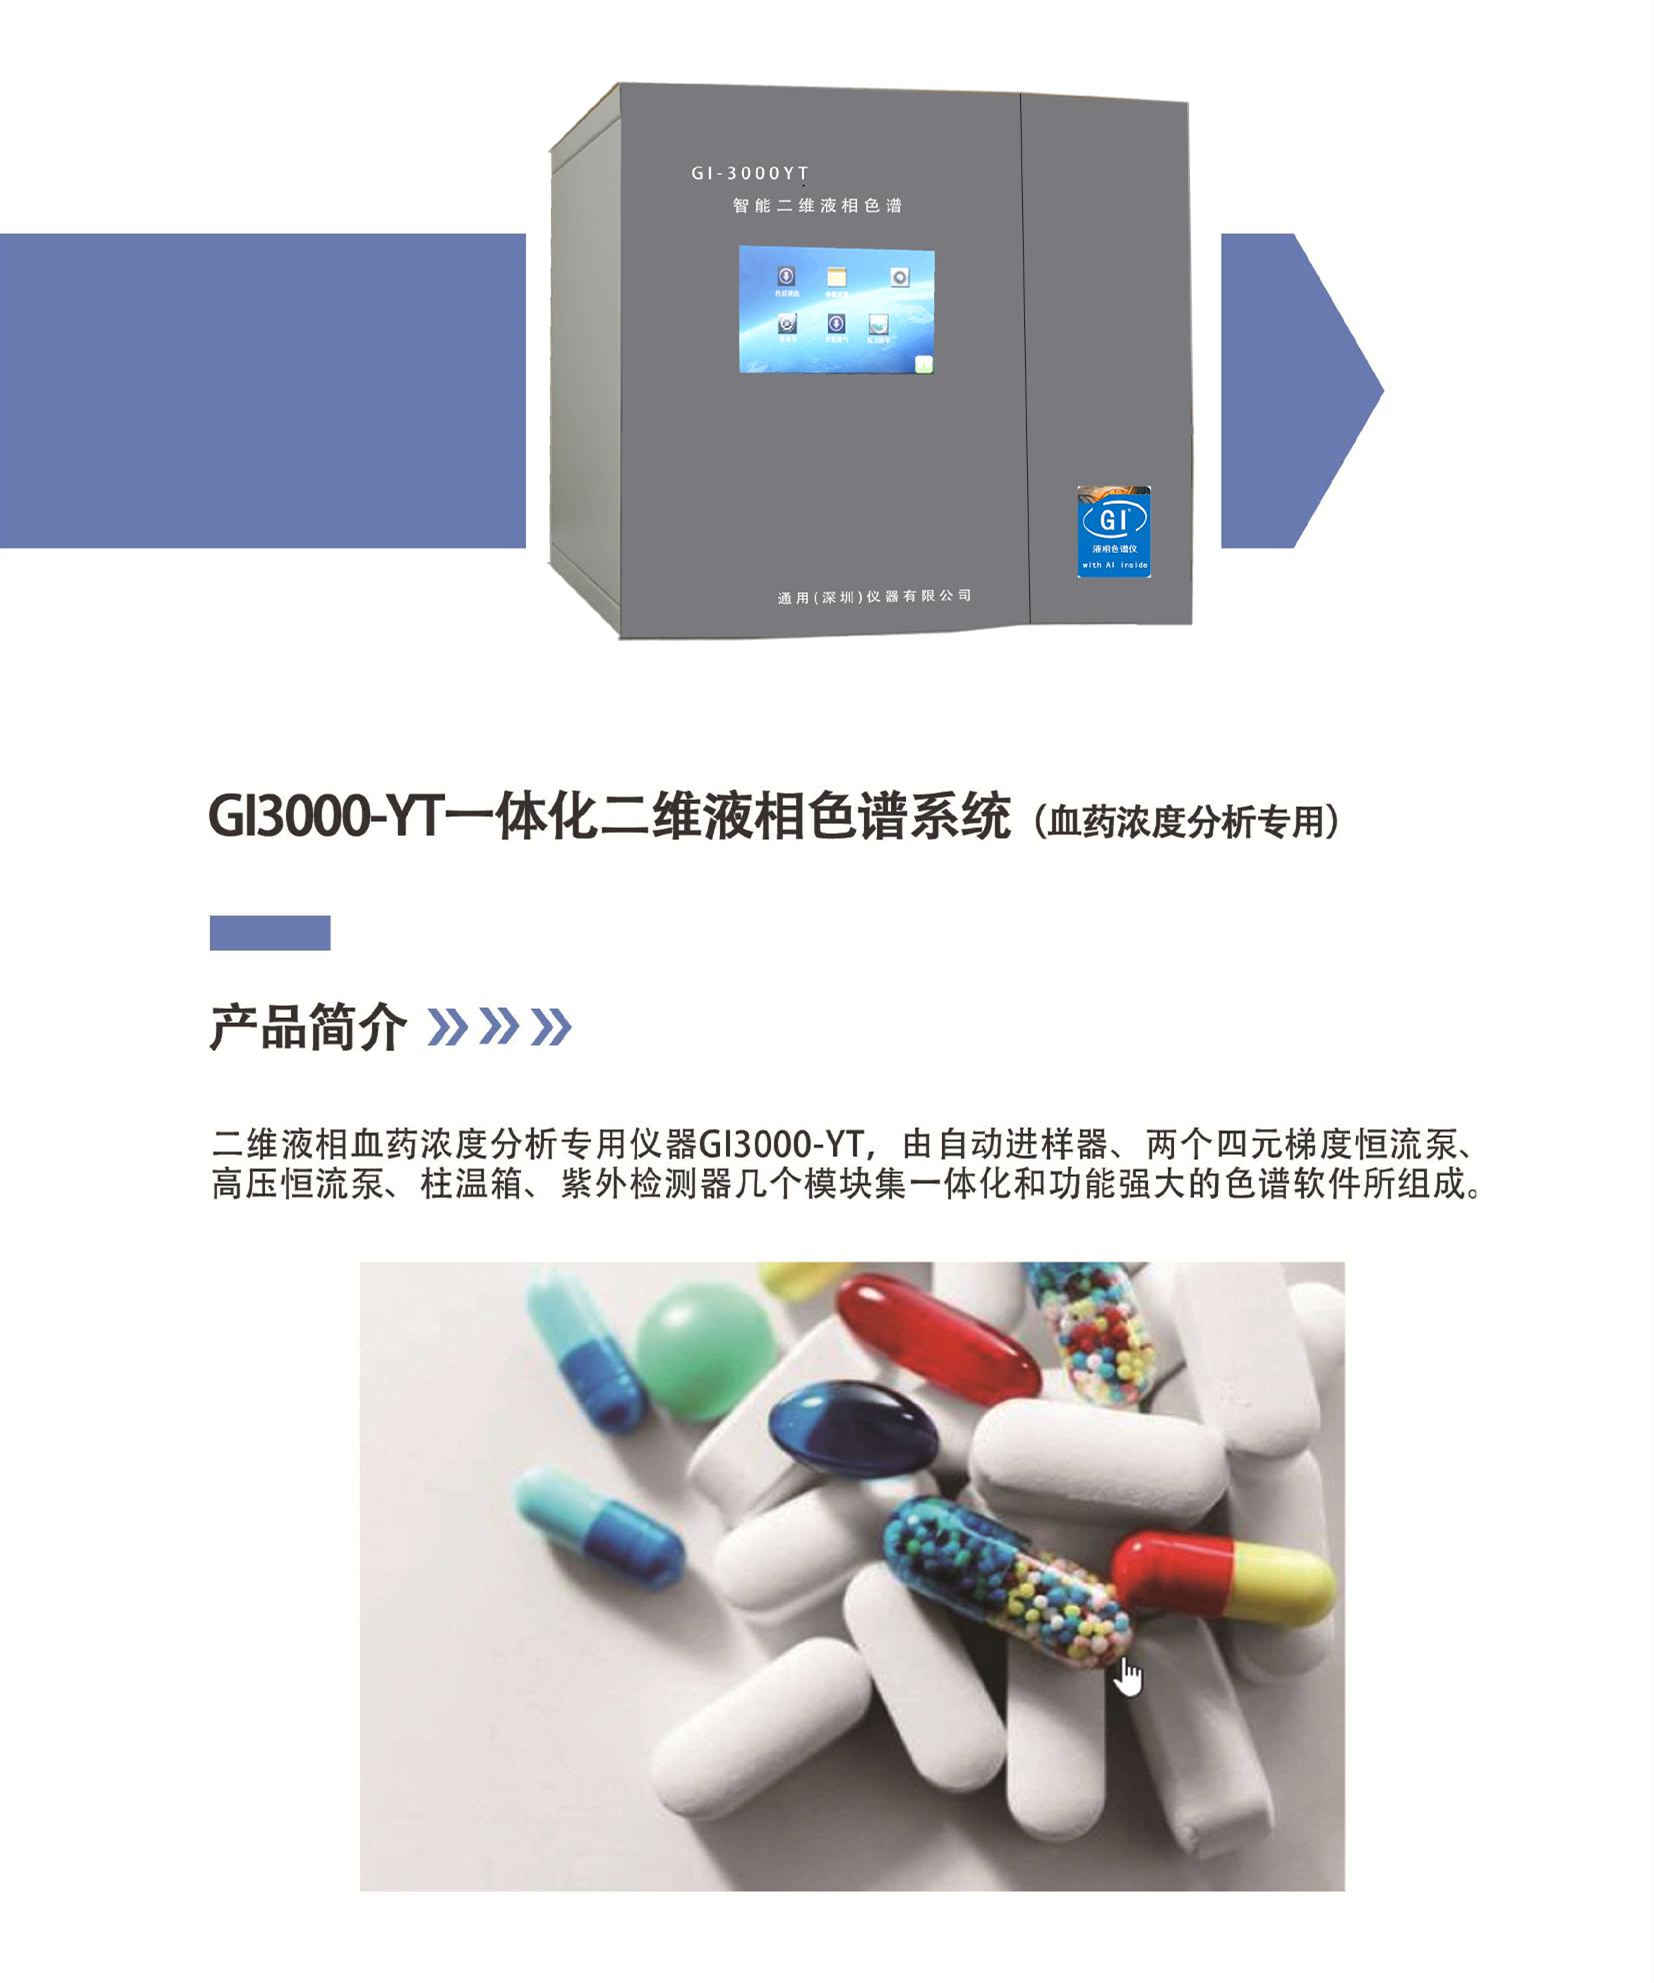 血药浓度分析仪（GI-3000YT） 一体机(图1)